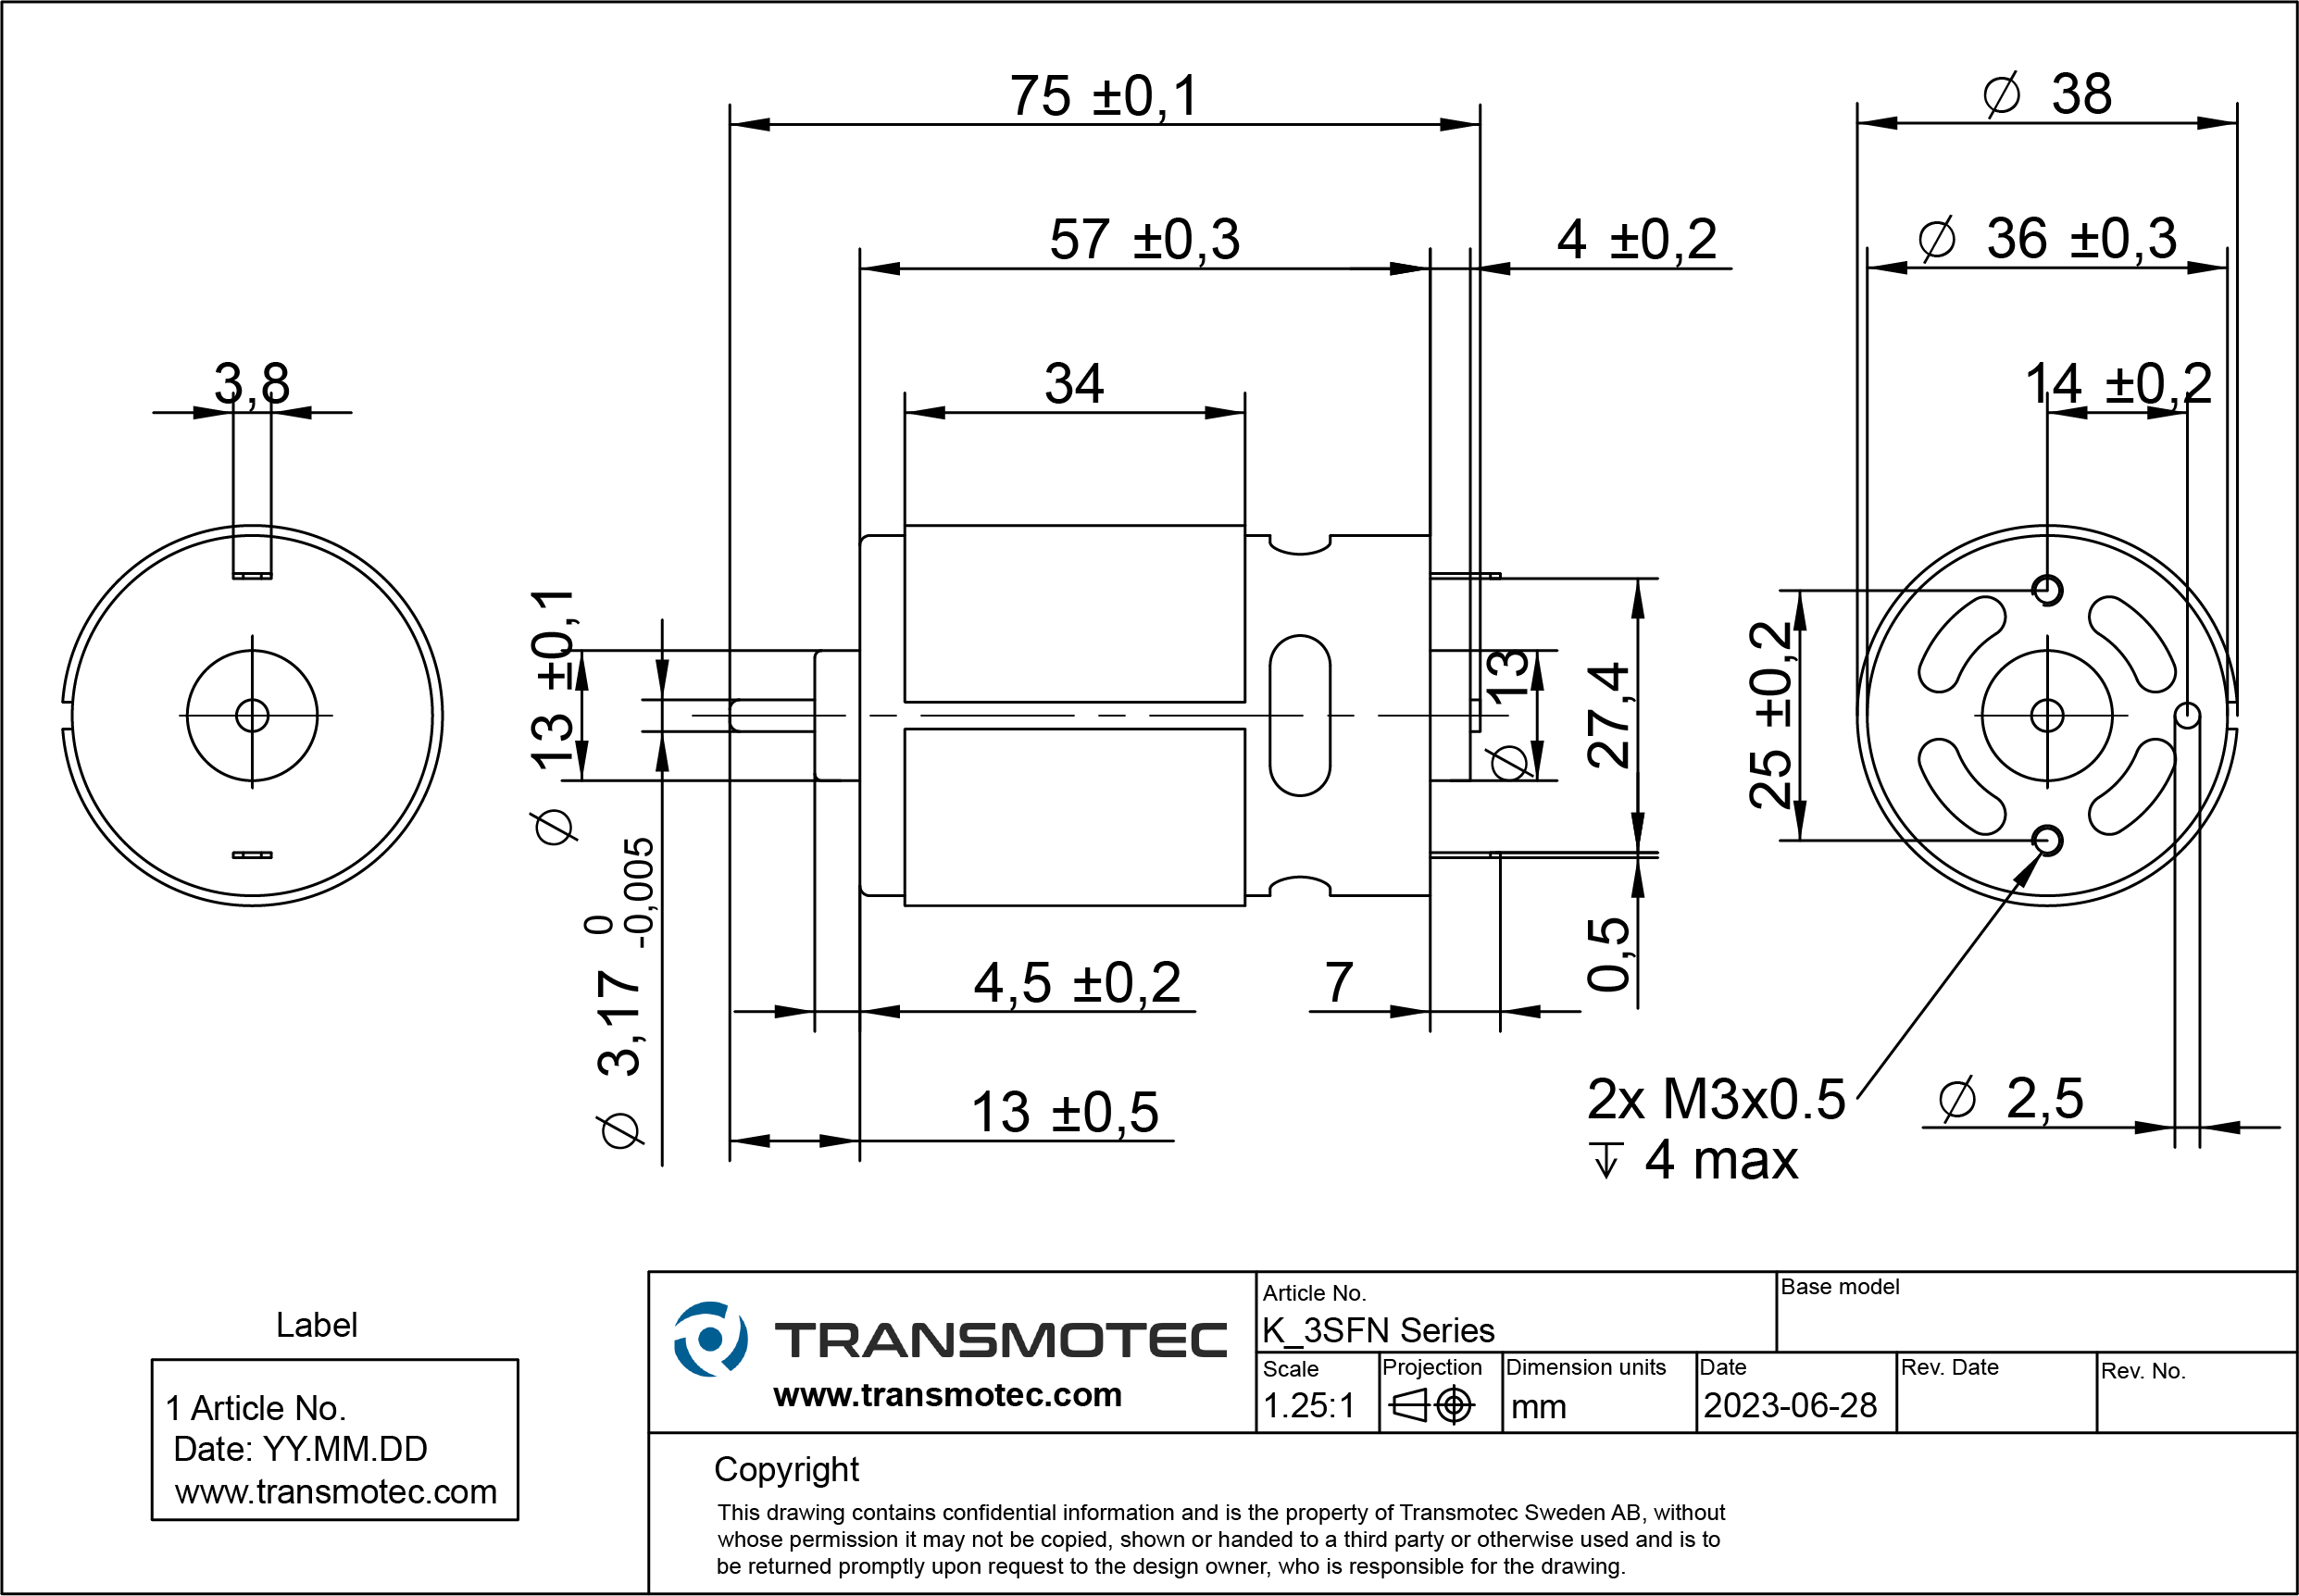 DC-motors 7.2VDC 10A - Transmotec